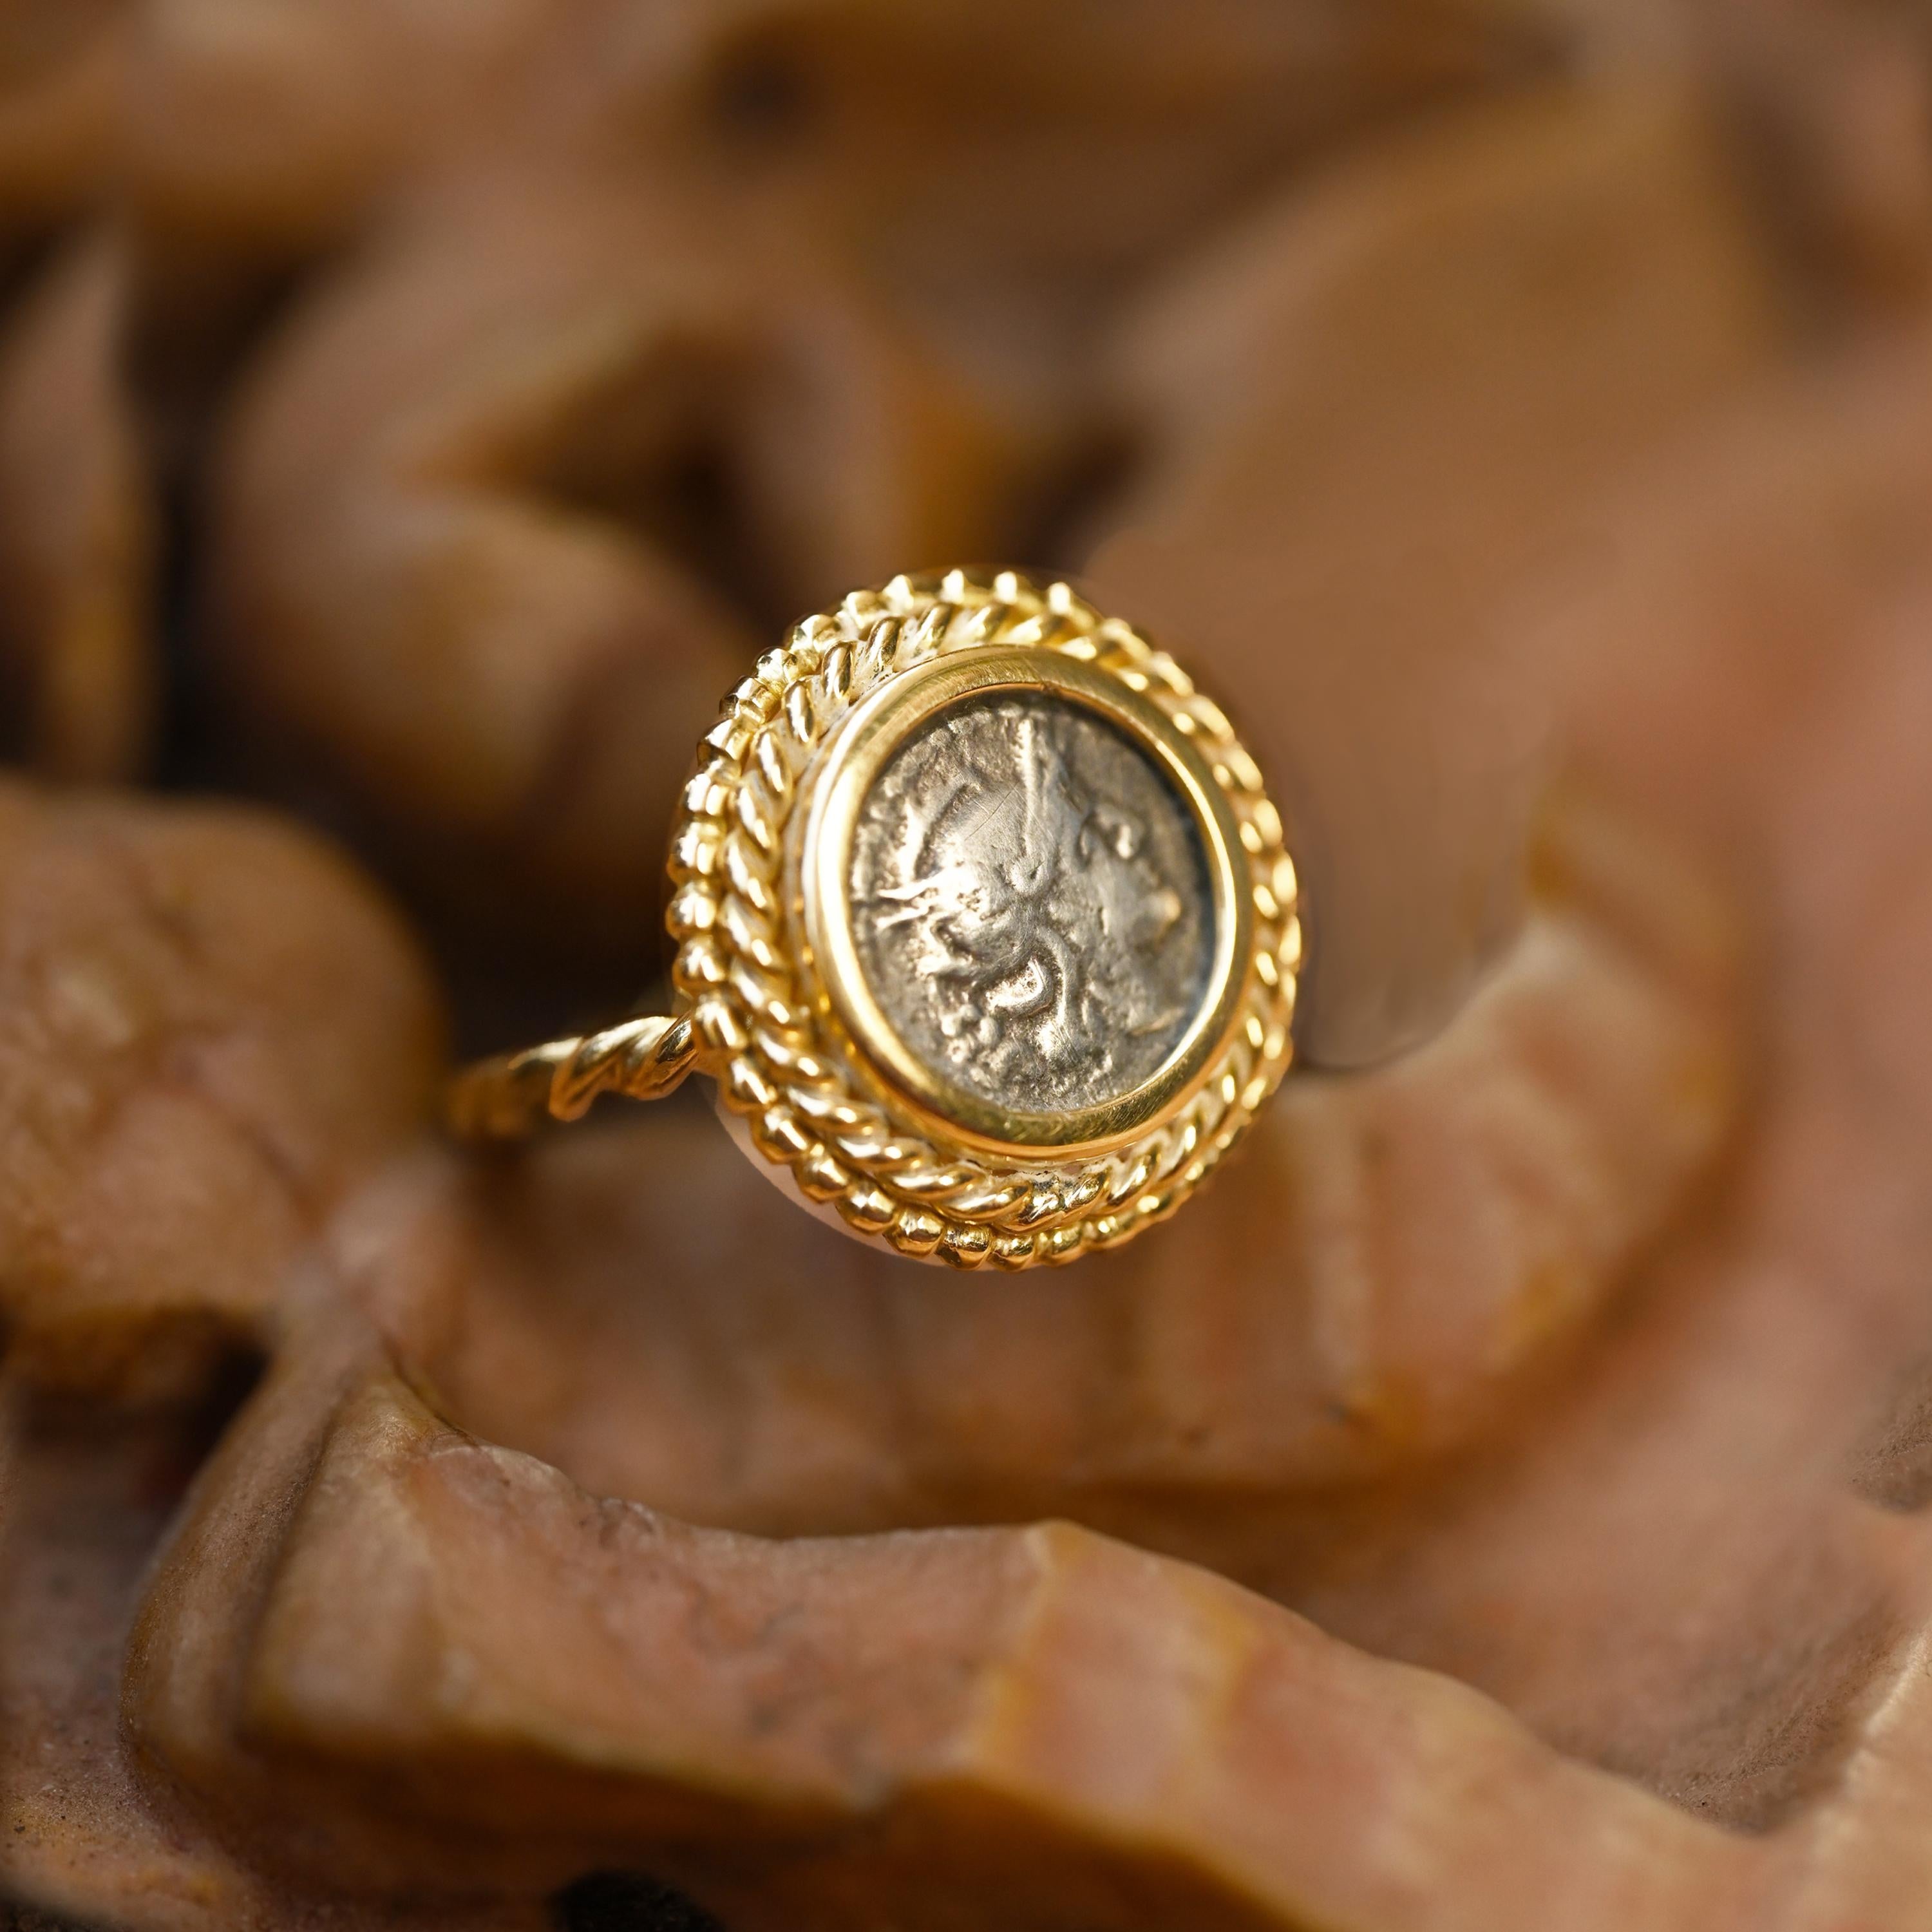 Cette magnifique bague en or 18 carats met en valeur une authentique pièce de monnaie romaine en argent, un sestertius datant de 211 avant J.-C. et représentant la déesse Rome. Méticuleusement fabriquée, cette bague témoigne d'un savoir-faire